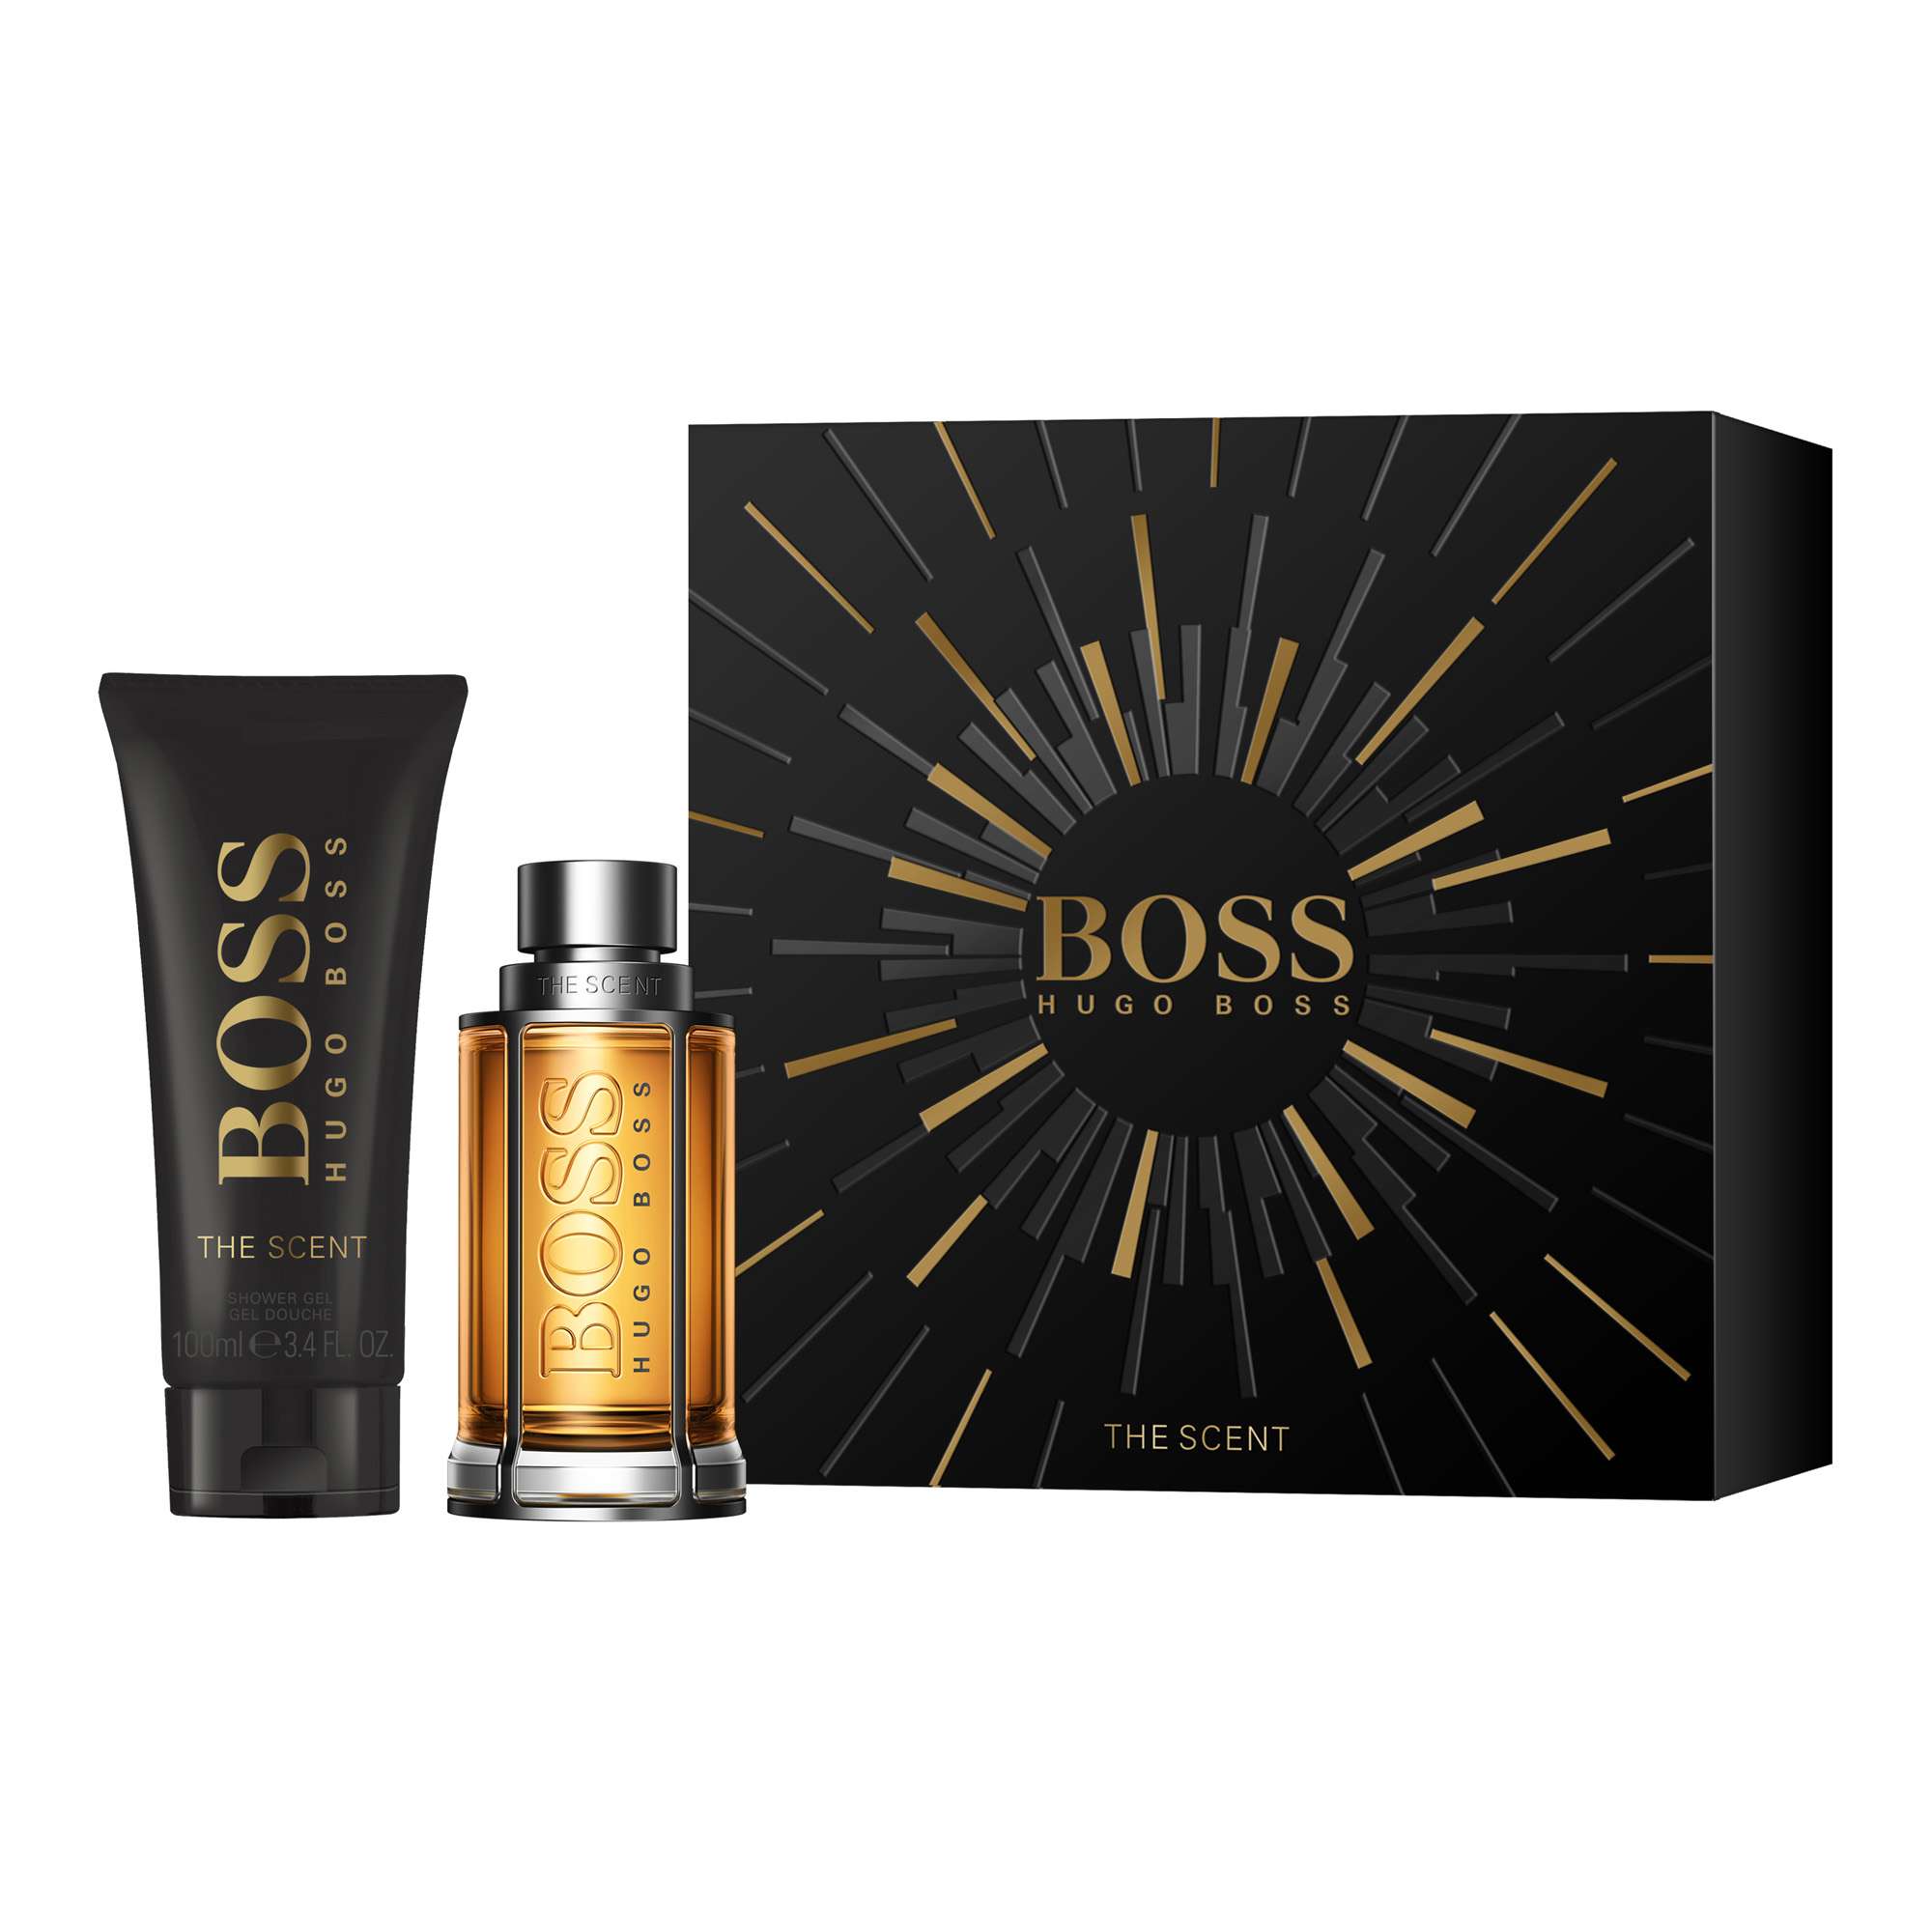 Hugo Boss - The Scent EDT 50 ml + Shower Gel 100 ml - Giftset